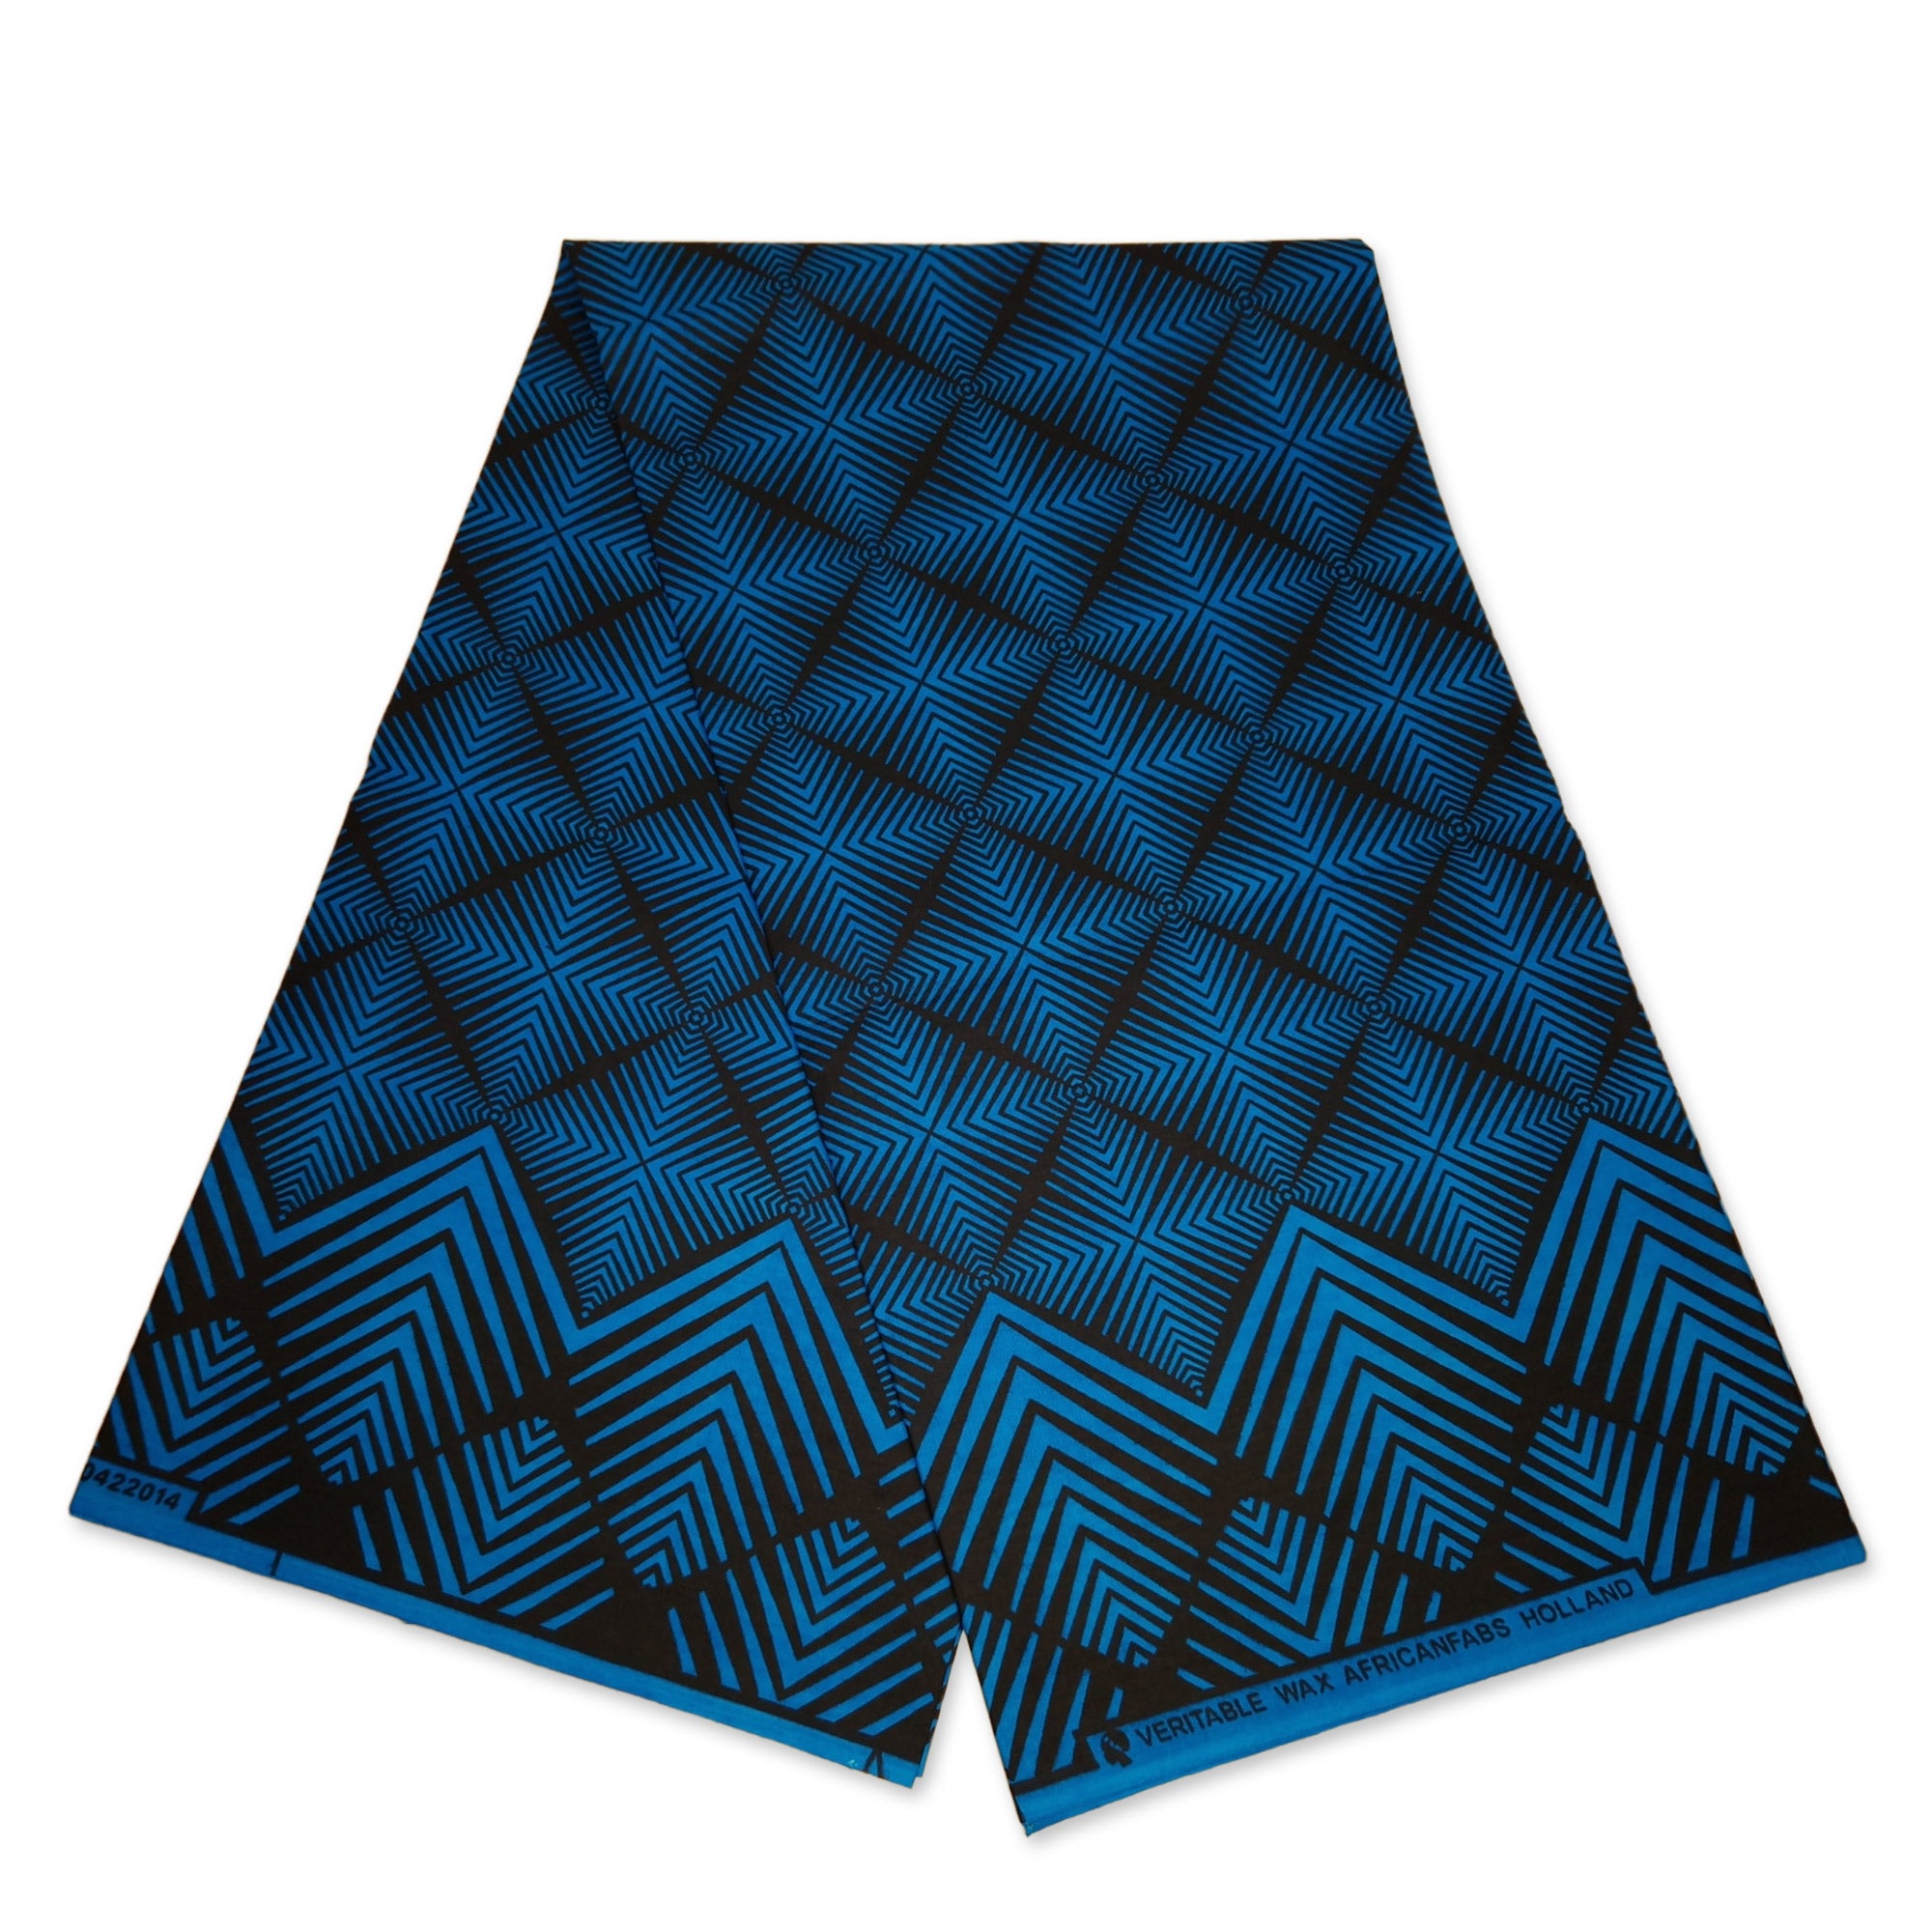 Afrikanischer Print Stoff - Blau Fade Effect - 100% Baumwolle